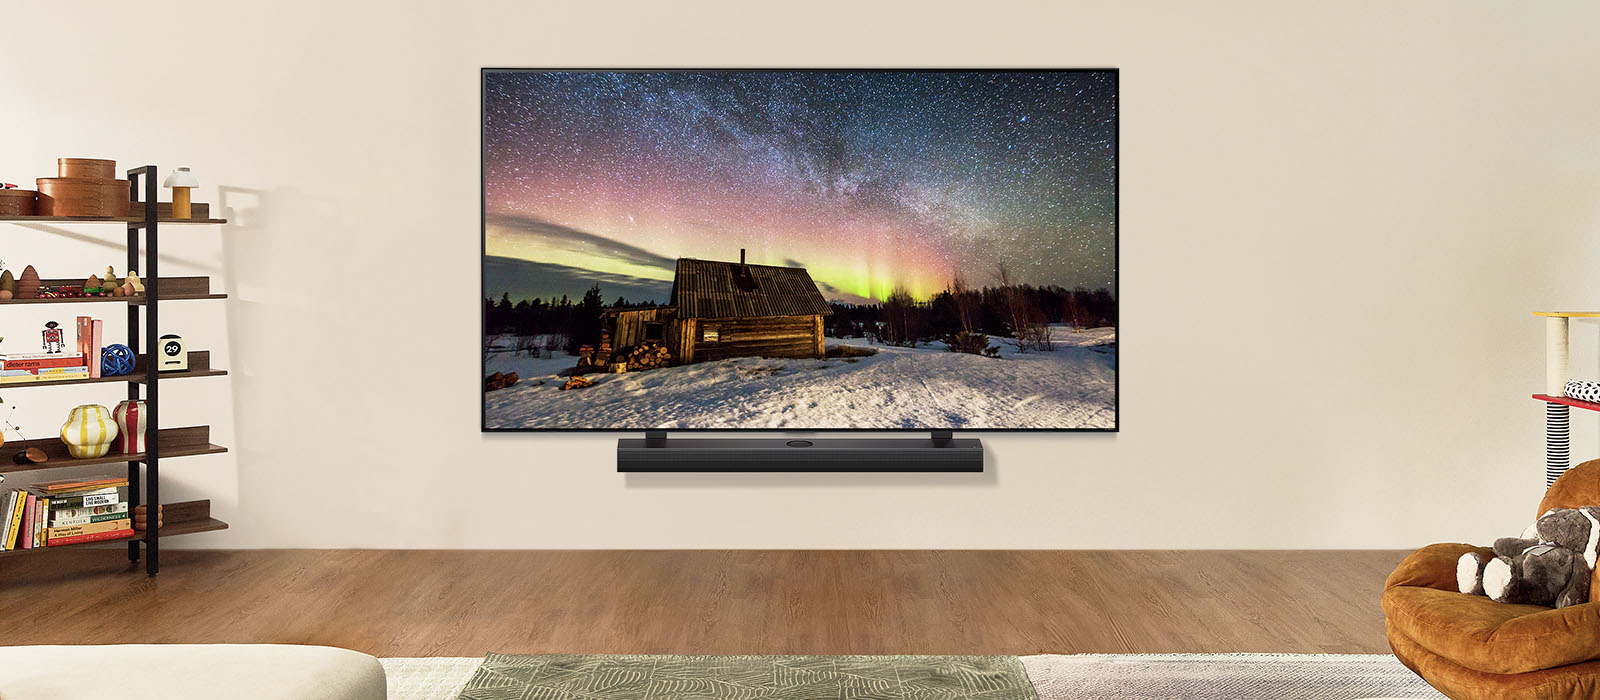 LG TV ja LG ribakõlar päevasel ajal tänapäevases eluruumis. Virmaliste ekraanipilt kuvatakse ideaalsete heledustasemetega.